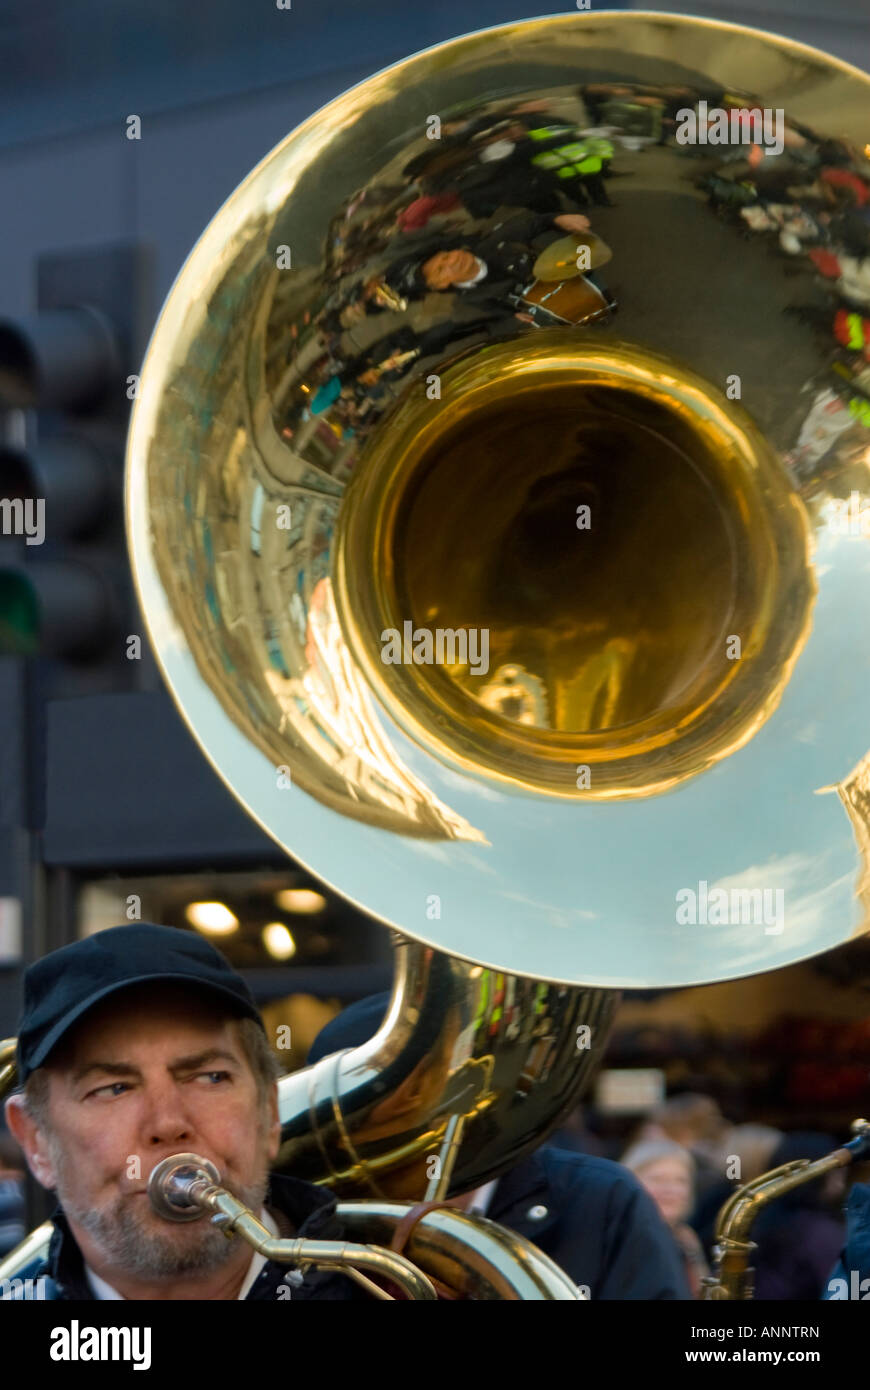 Chiudere verticale della campana di un enorme sousaphone aka marching tuba, giocato da un uomo in una banda di ottoni. Foto Stock